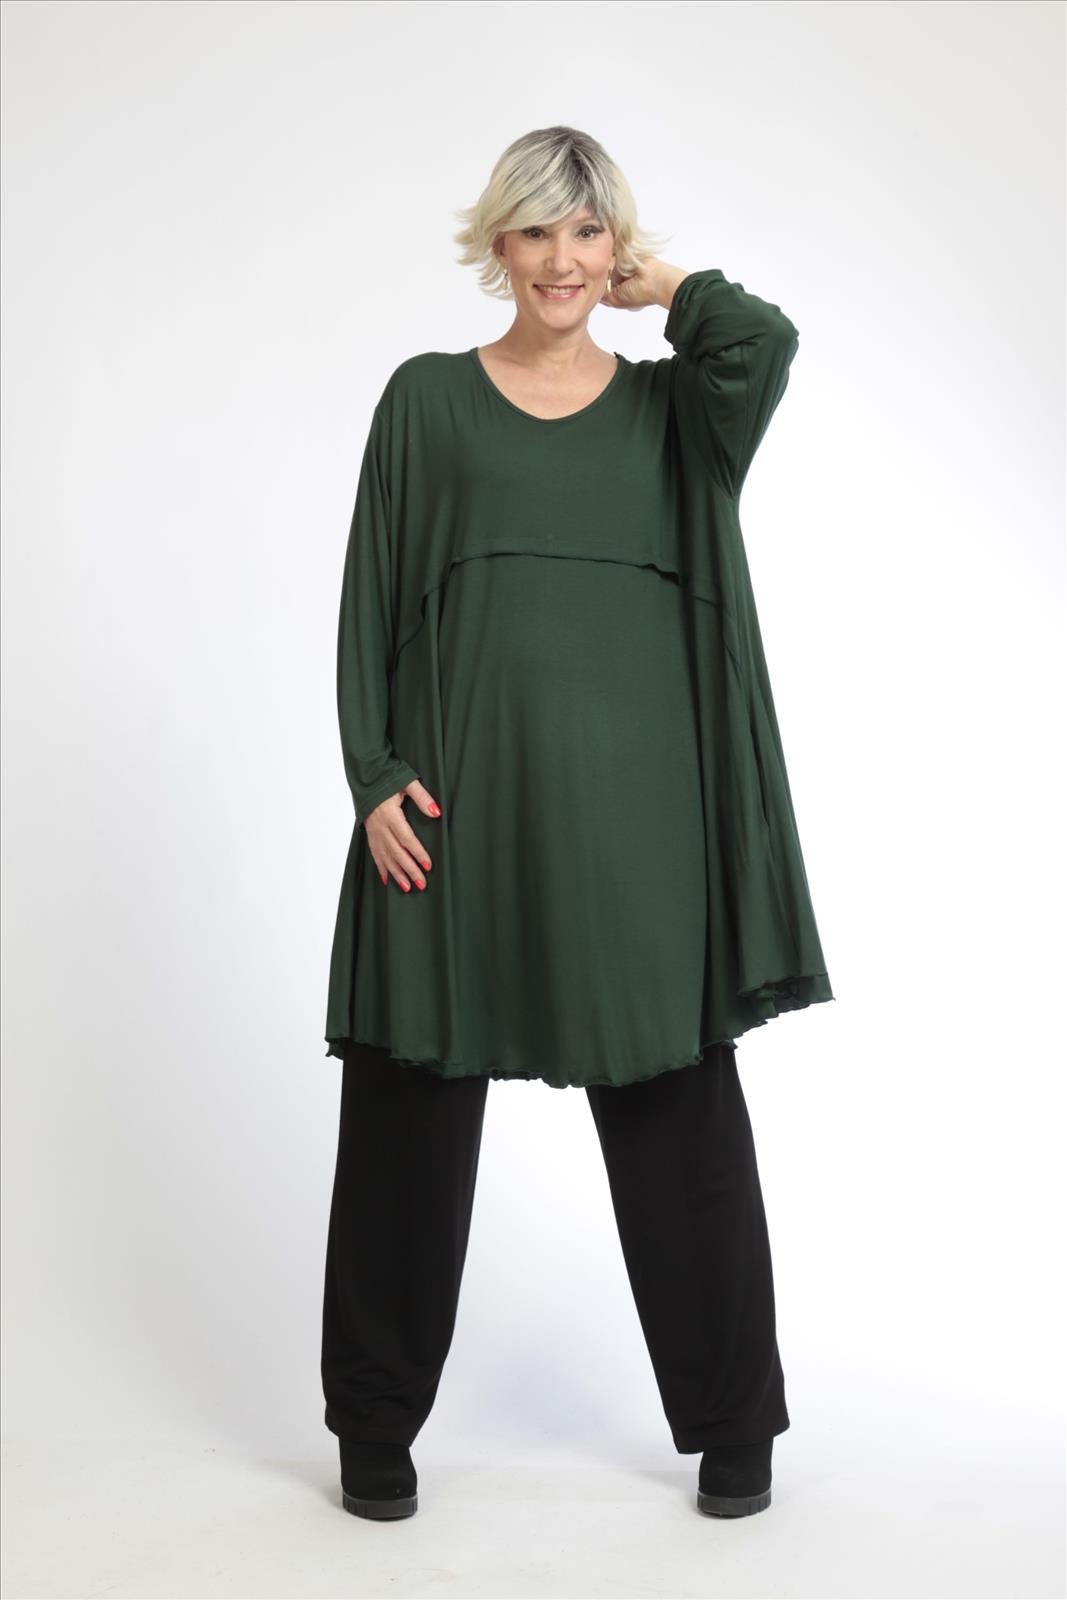 Alltags Big Shirt in A-Form aus feiner Jersey Qualität, Grün Lagenlook Oversize Mode B2B Großhandel